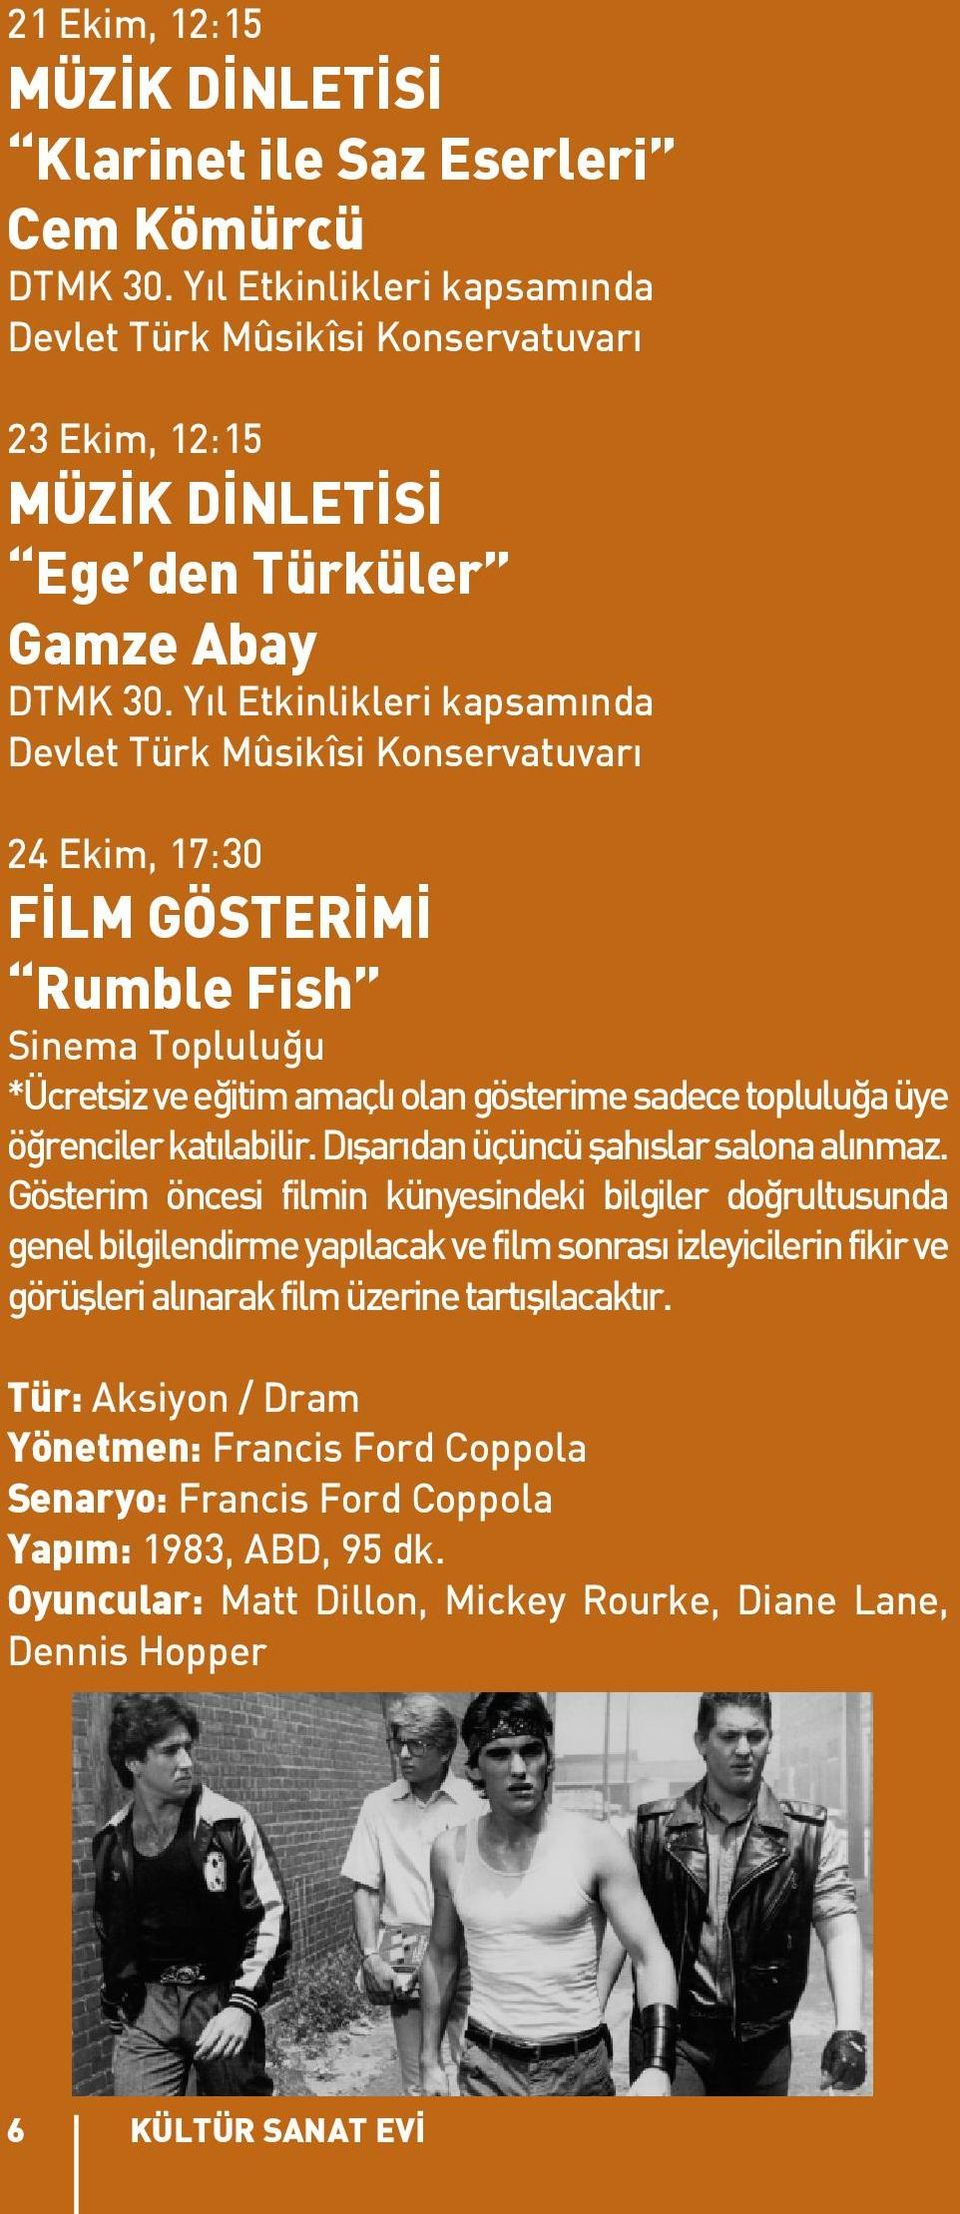 Yıl Etkinlikleri kapsamında Devlet Türk Mûsikîsi Konservatuvarı 24 Ekim, 17:30 FİLM GÖSTERİMİ Rumble Fish Sinema Topluluğu *Ücretsiz ve eğitim amaçlı olan gösterime sadece topluluğa üye öğrenciler